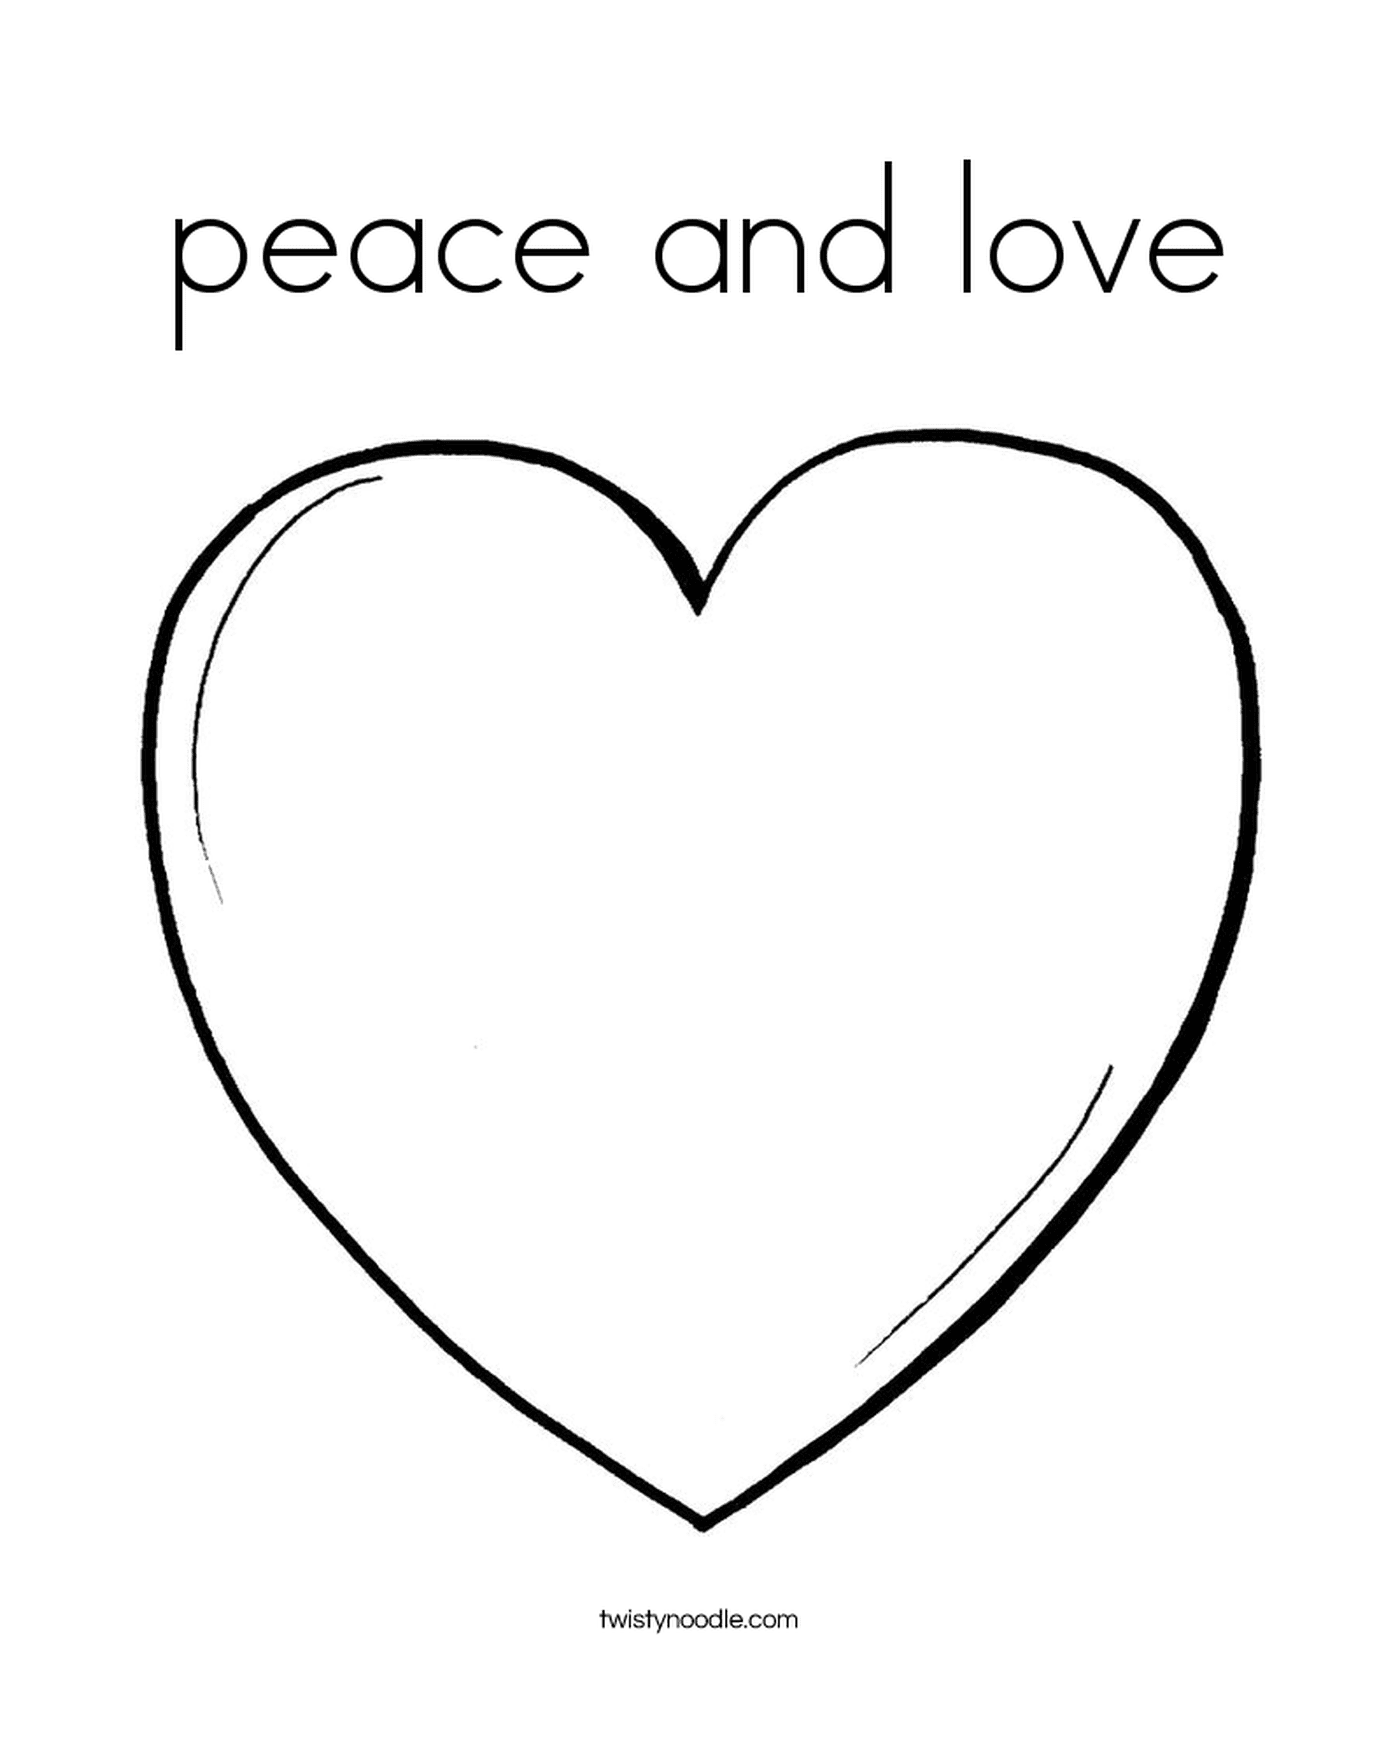  Ein Herz des Friedens und der Liebe 